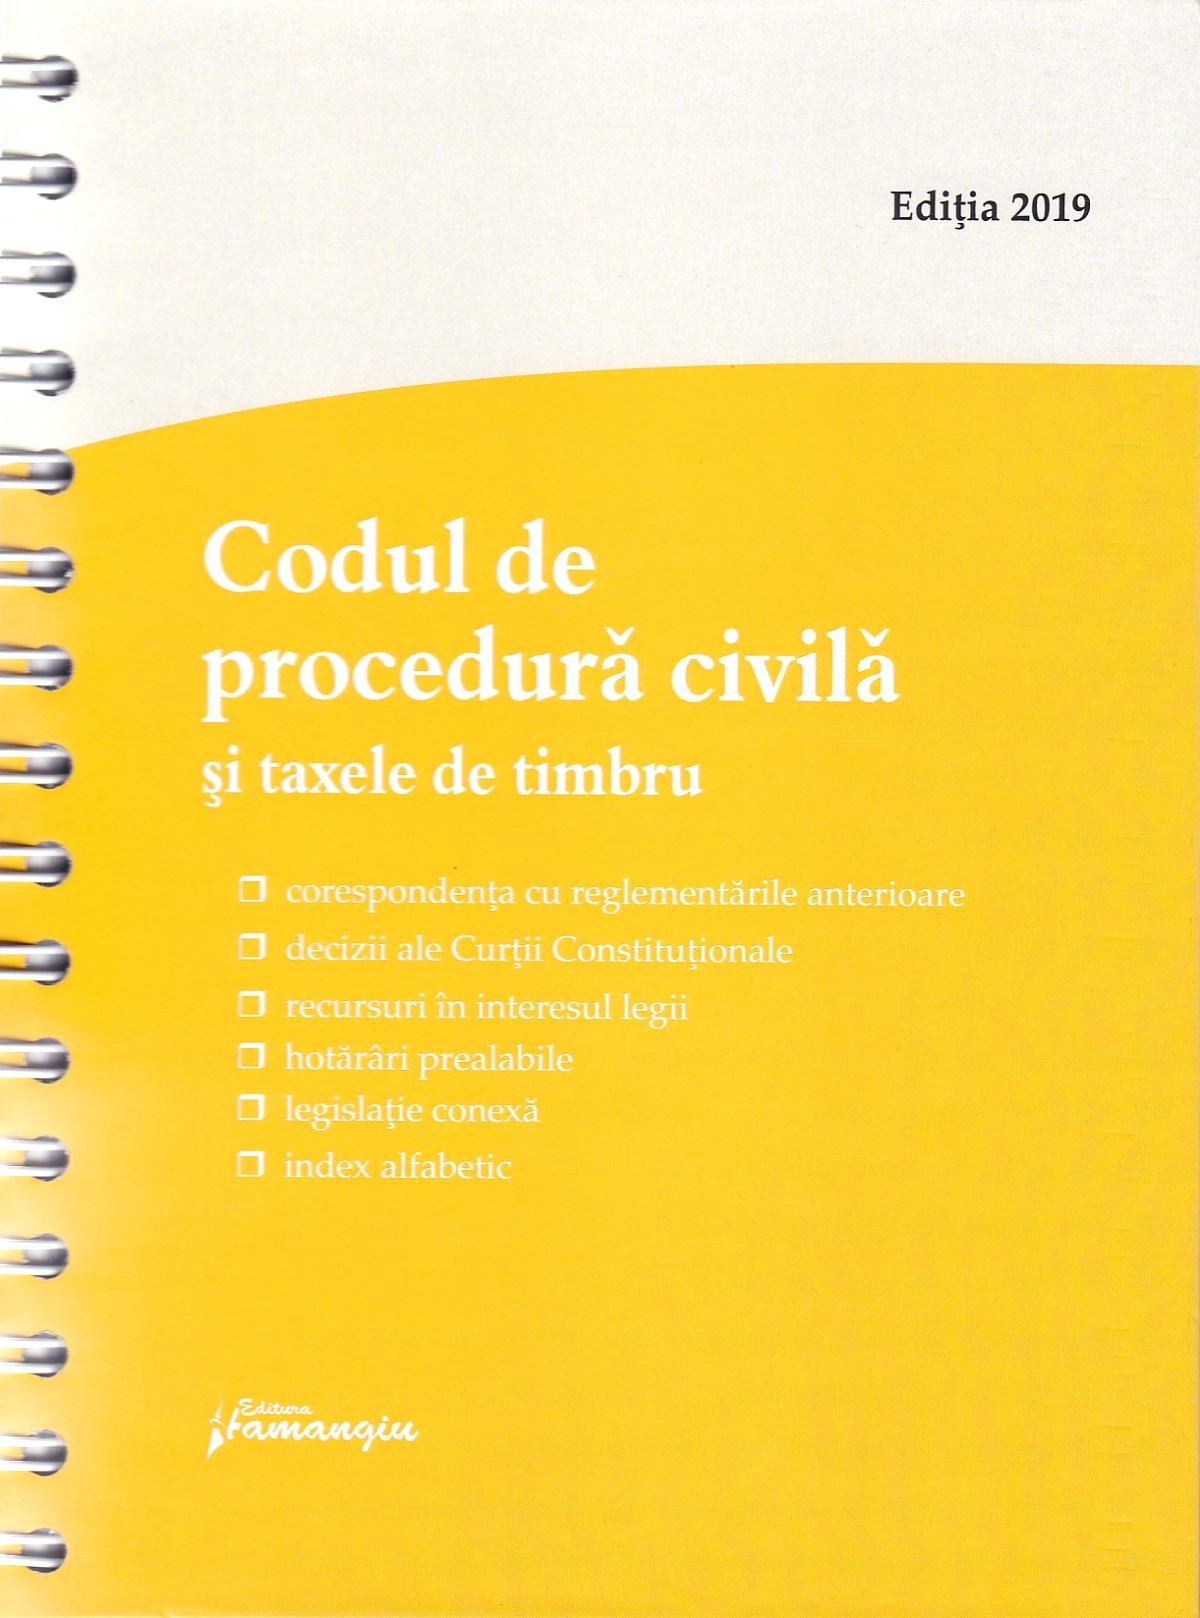 Codul de procedura civila si taxele de timbru. Act la 20 februarie 2019